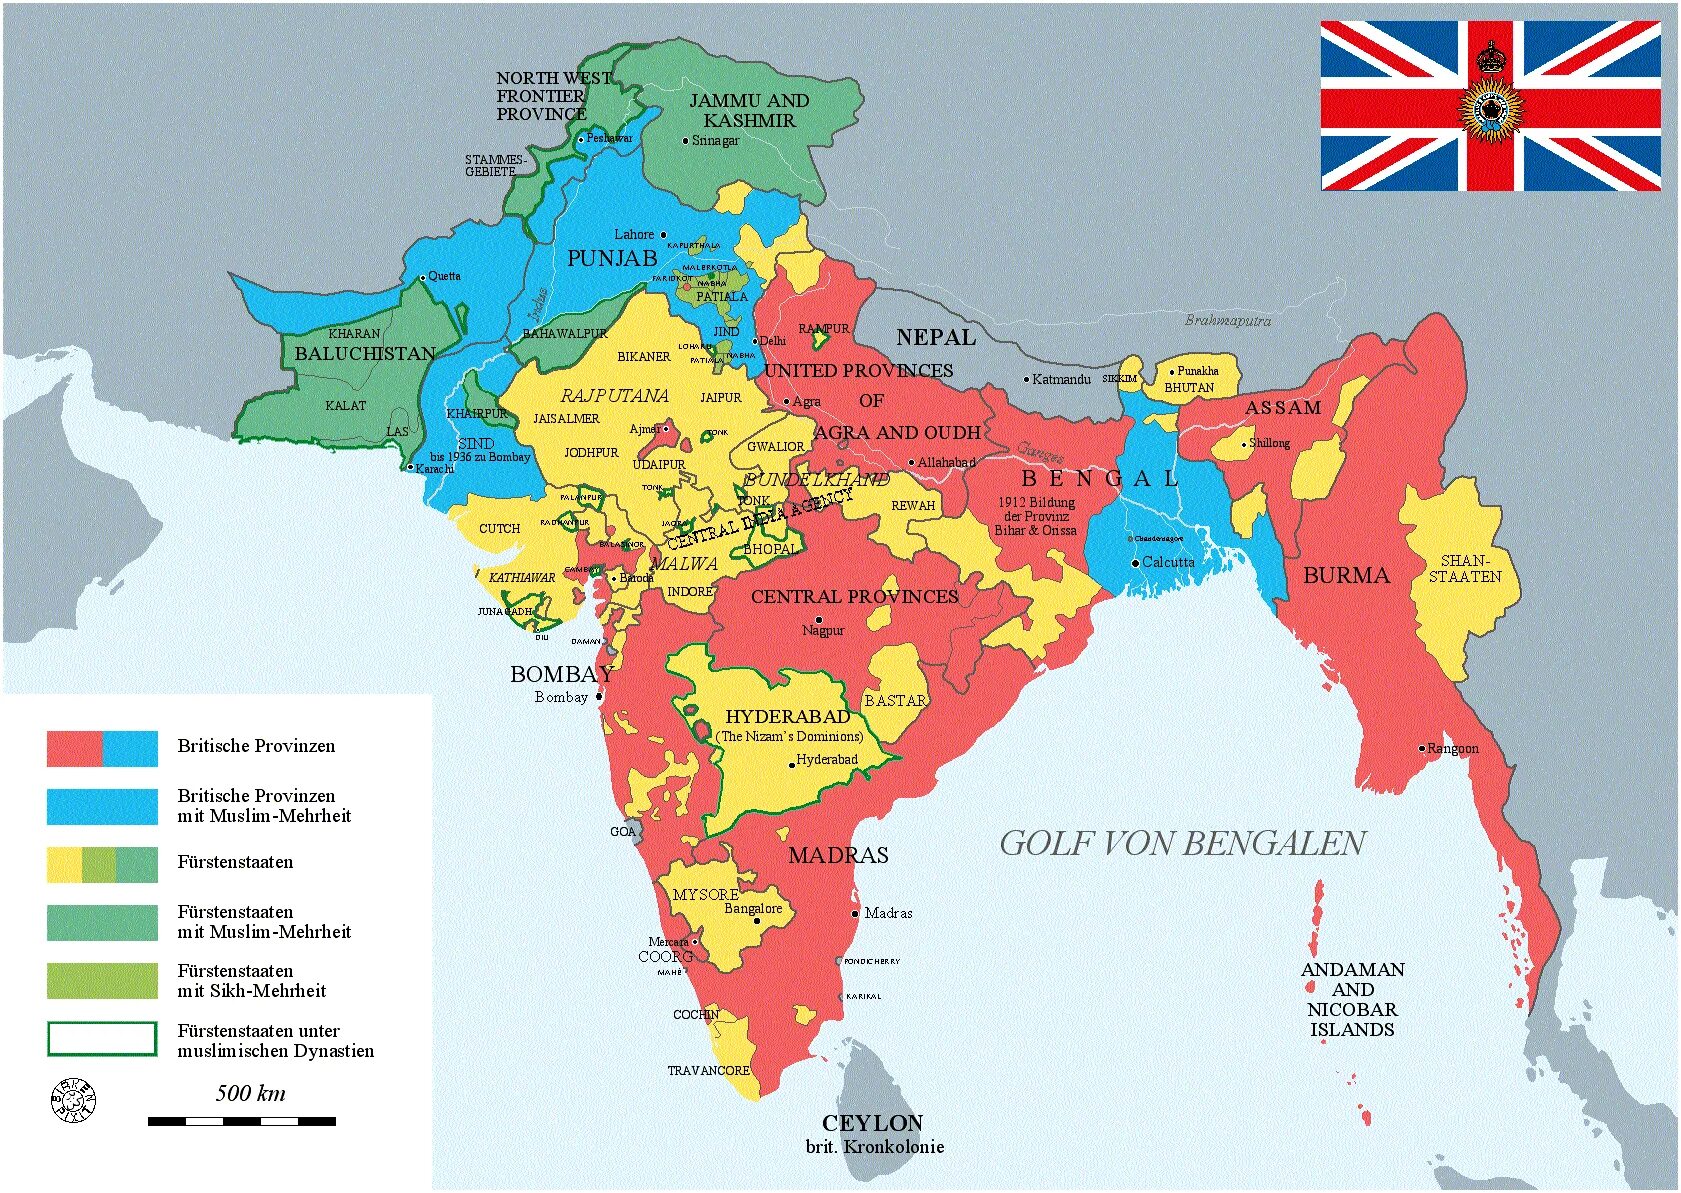 Сколько стран в индии. Британские колонии в Индии 19 век карта. Британская Индия карта 19 век. Британская Индия в 19 веке карта. Колониальная Индия 19 века карта.